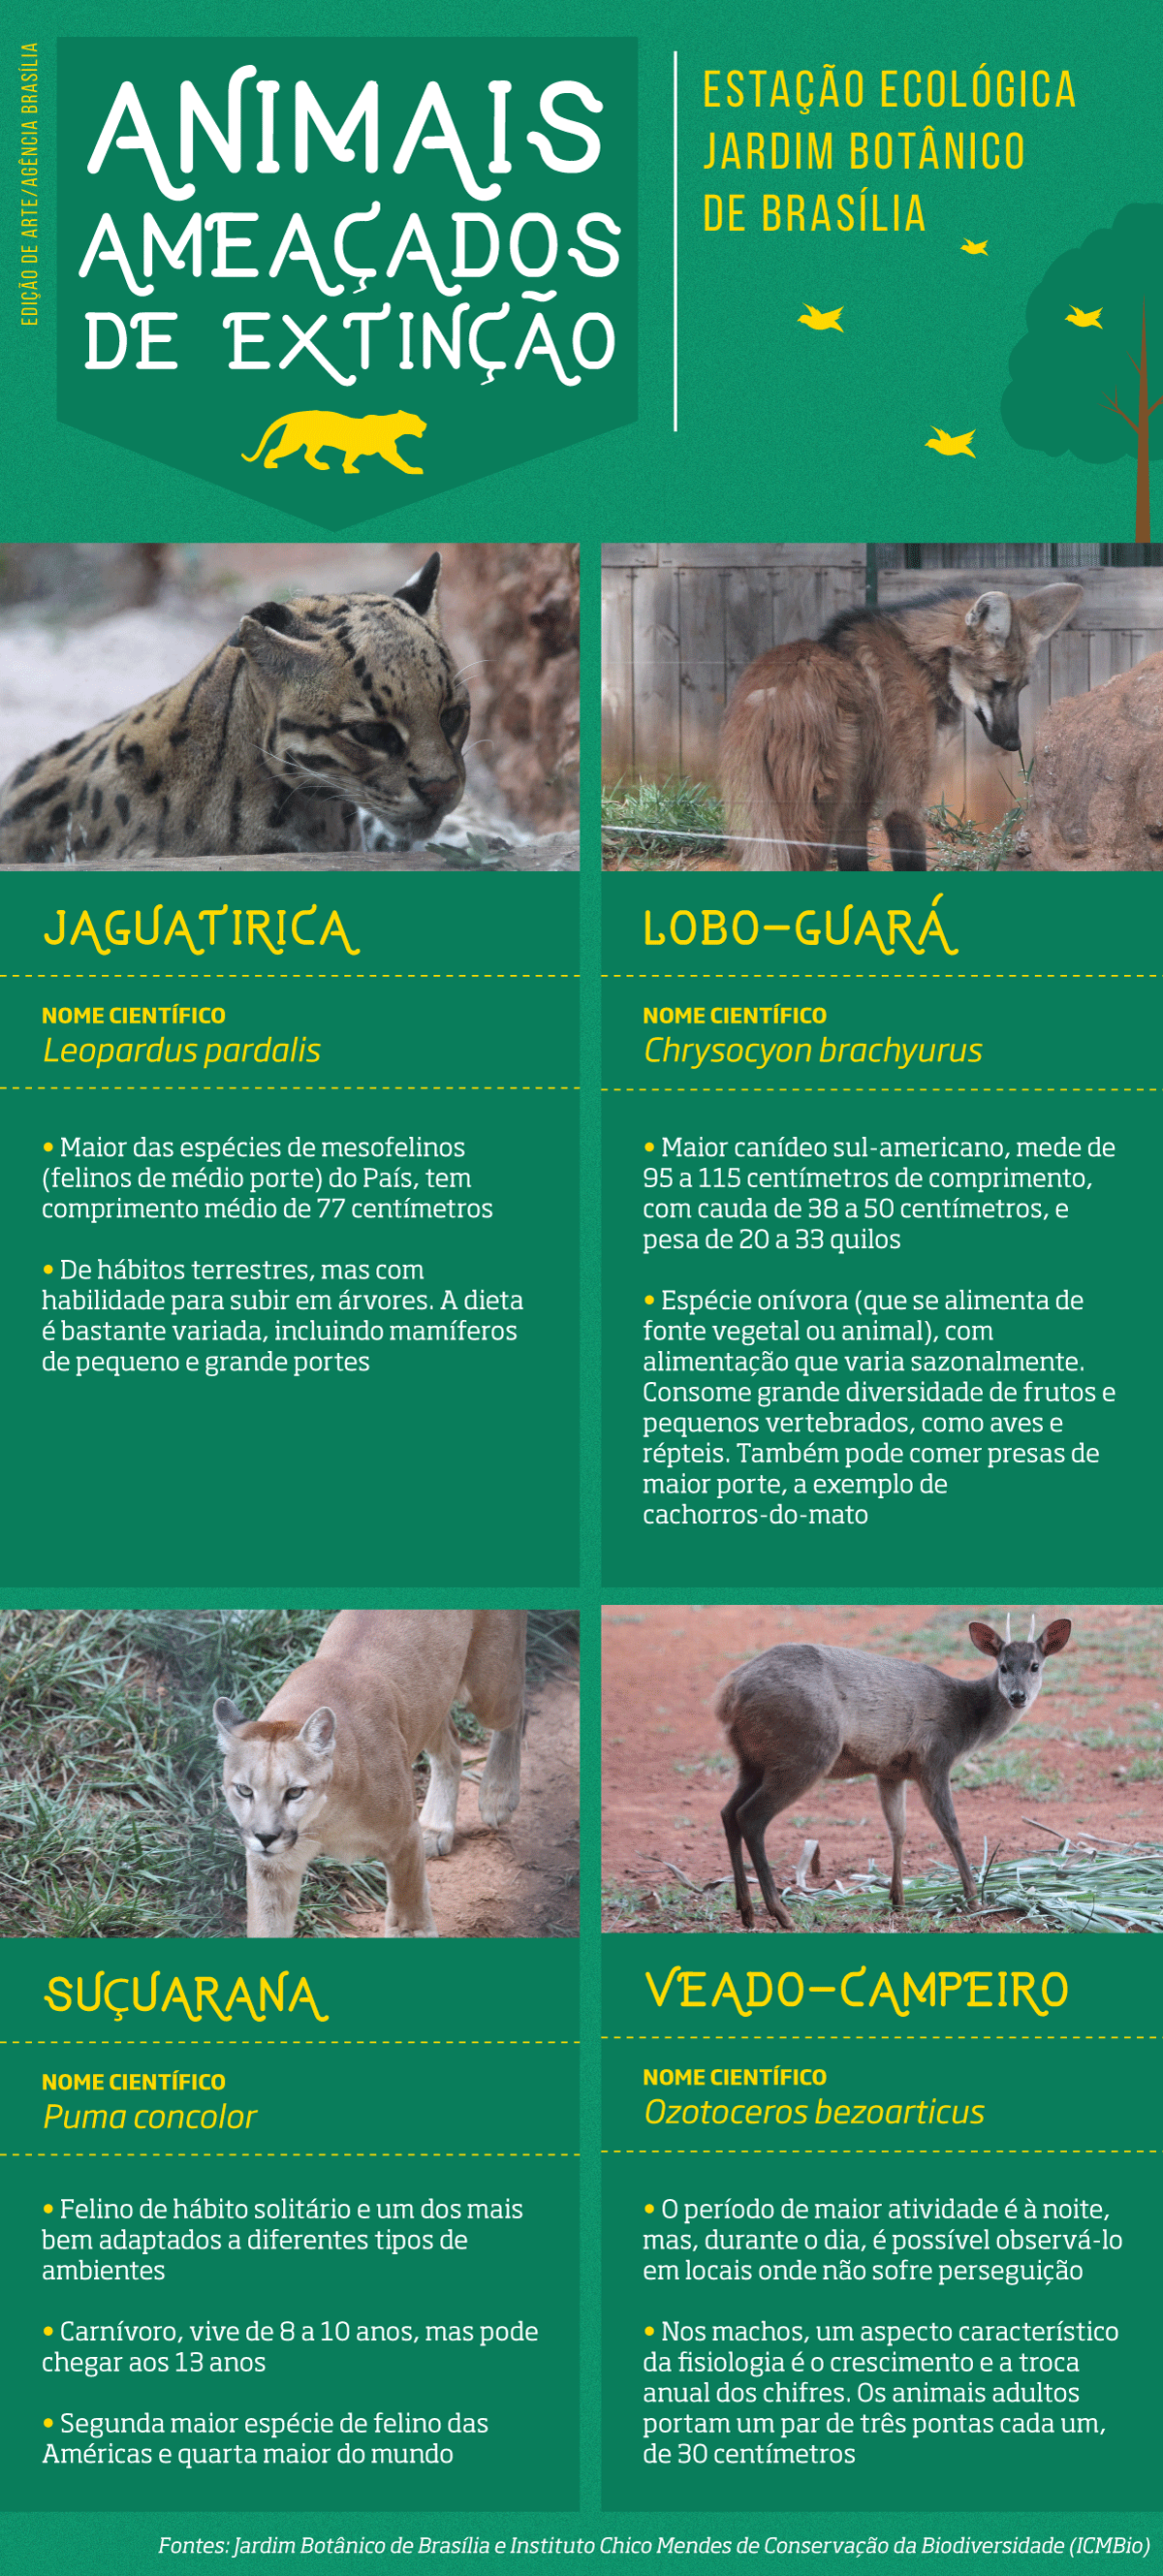 Exemplos de animais ameaçados de extinção que vivem na Estação Ecológica do Jardim Botânico de Brasília